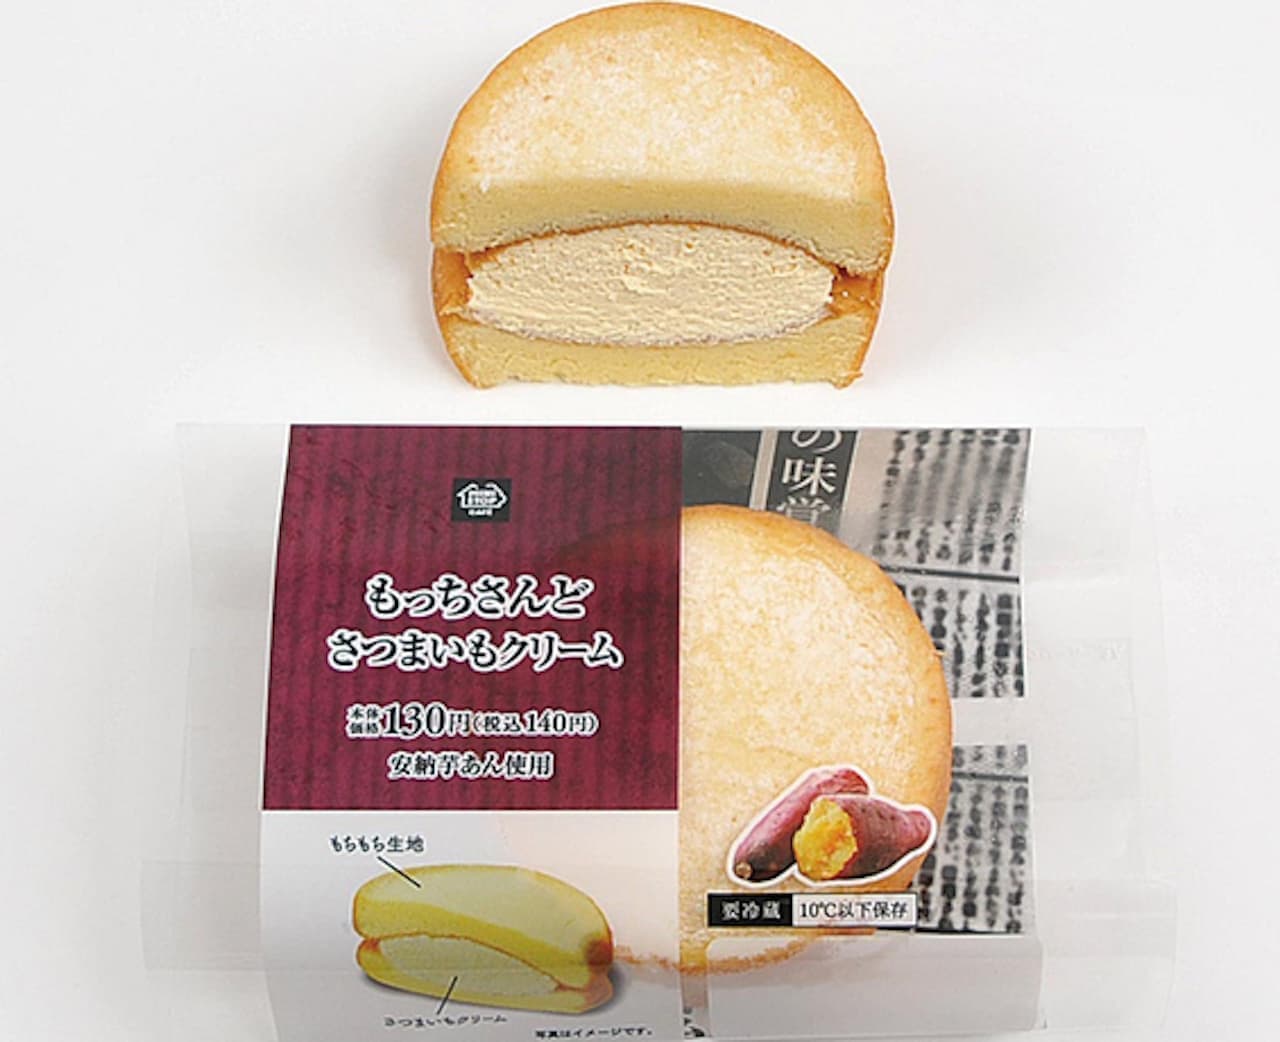 Ministop "Mocchi-san Do Sweet Potato Cream"